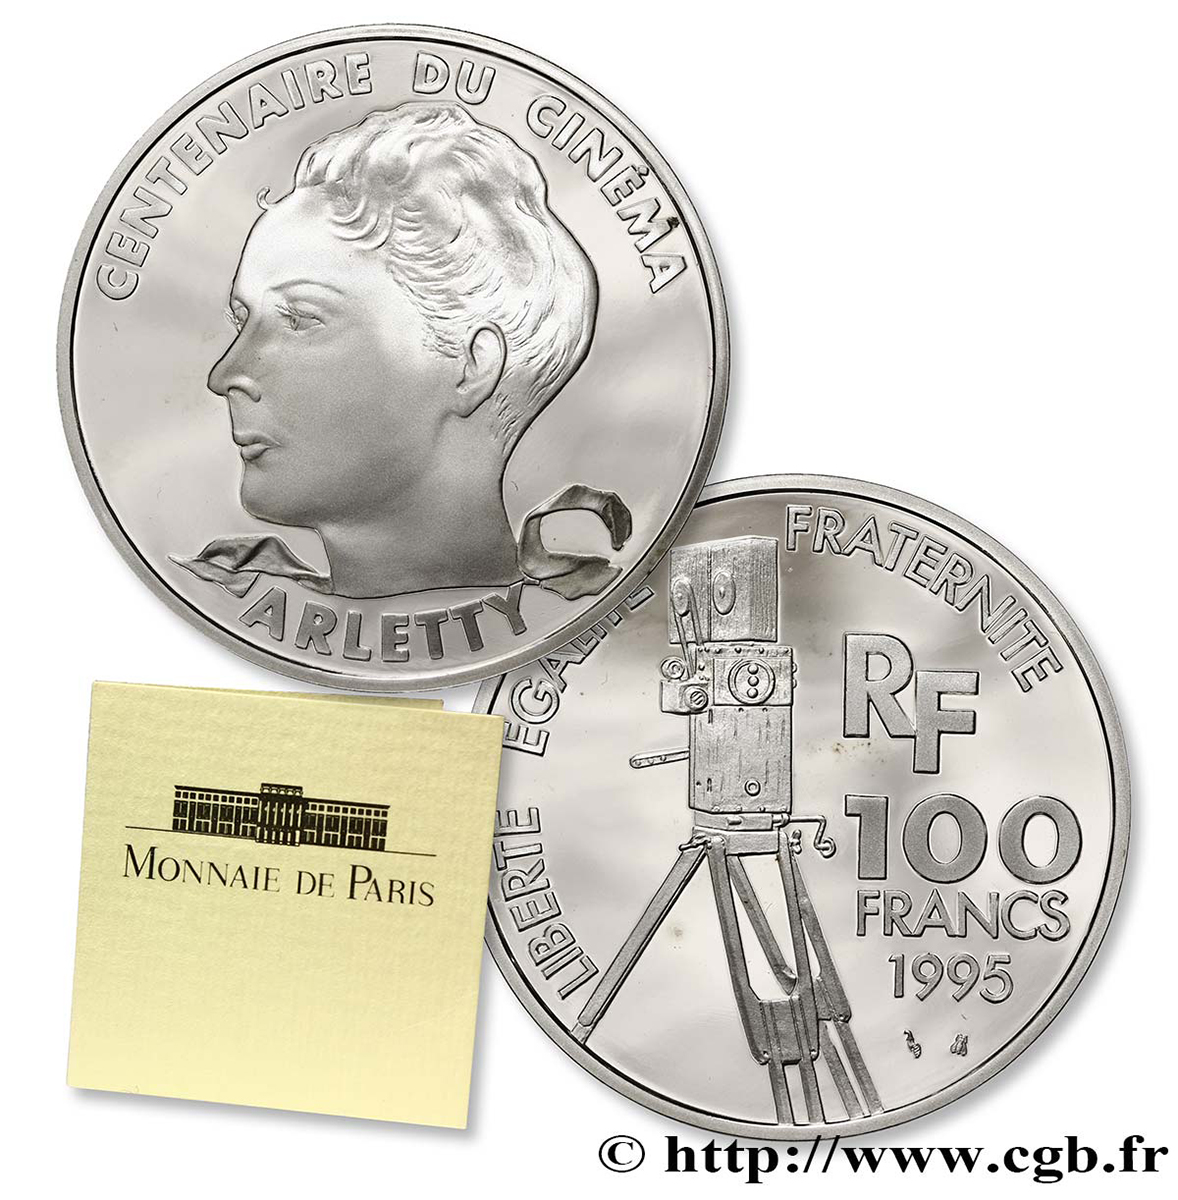 Belle Épreuve 100 francs - Arletty 1995 Paris F5.1642 2 MS70 